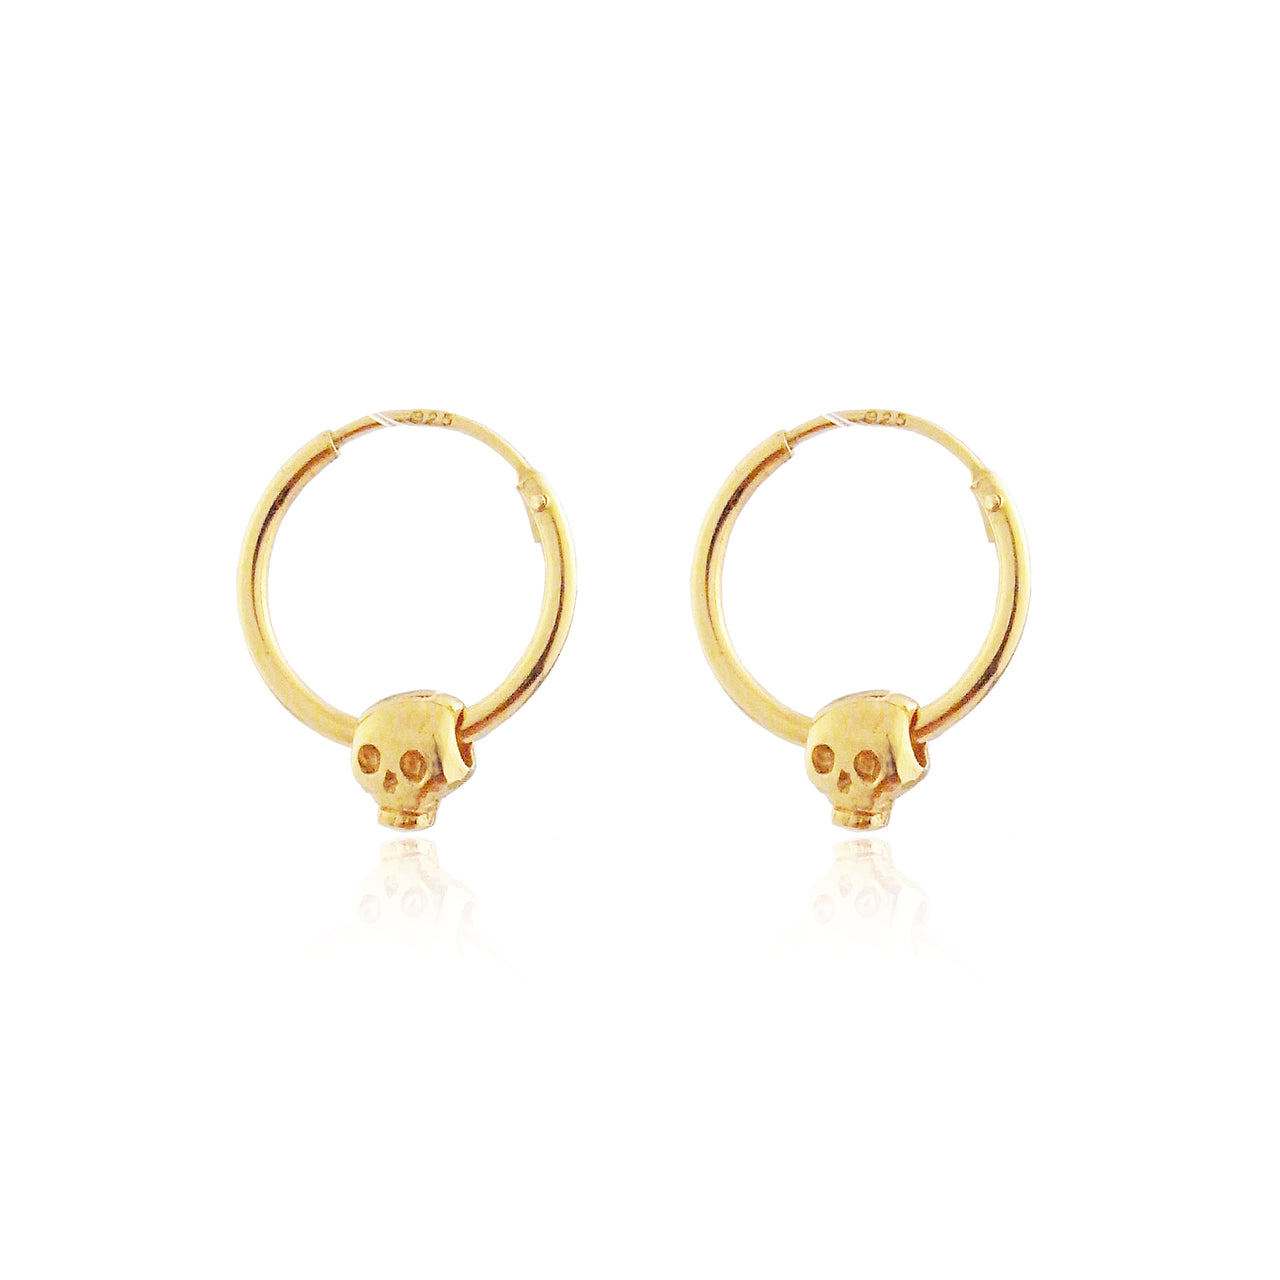 Baby Skull Hoop Earrings - Gold Plated